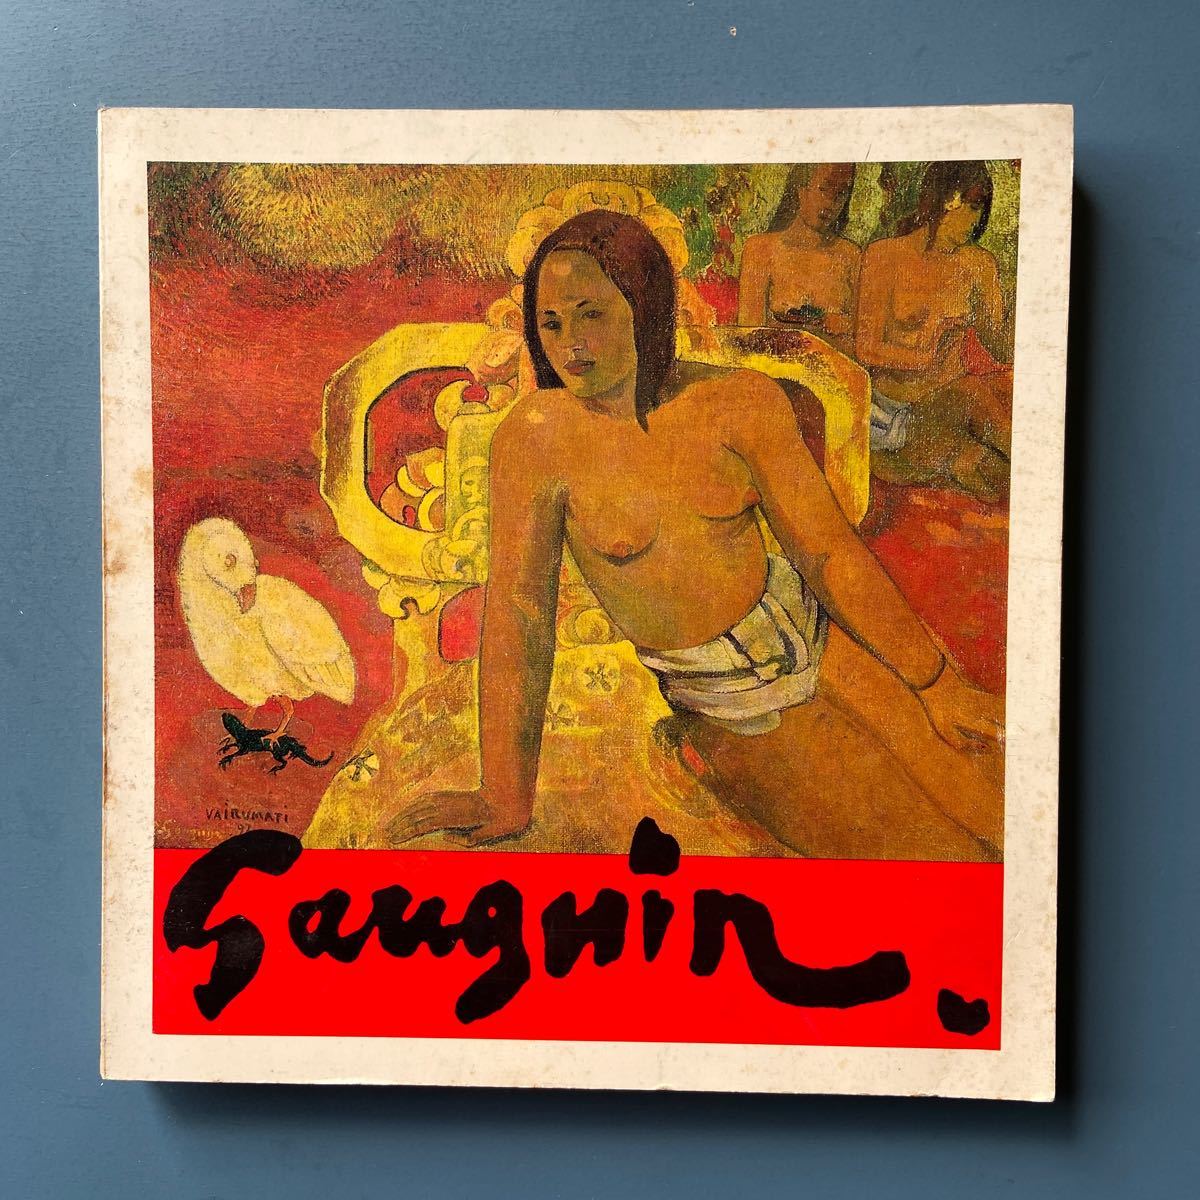 図録 ゴーギャン展 タヒチの神秘と太陽の画家 1969, 絵画, 画集, 作品集, 図録